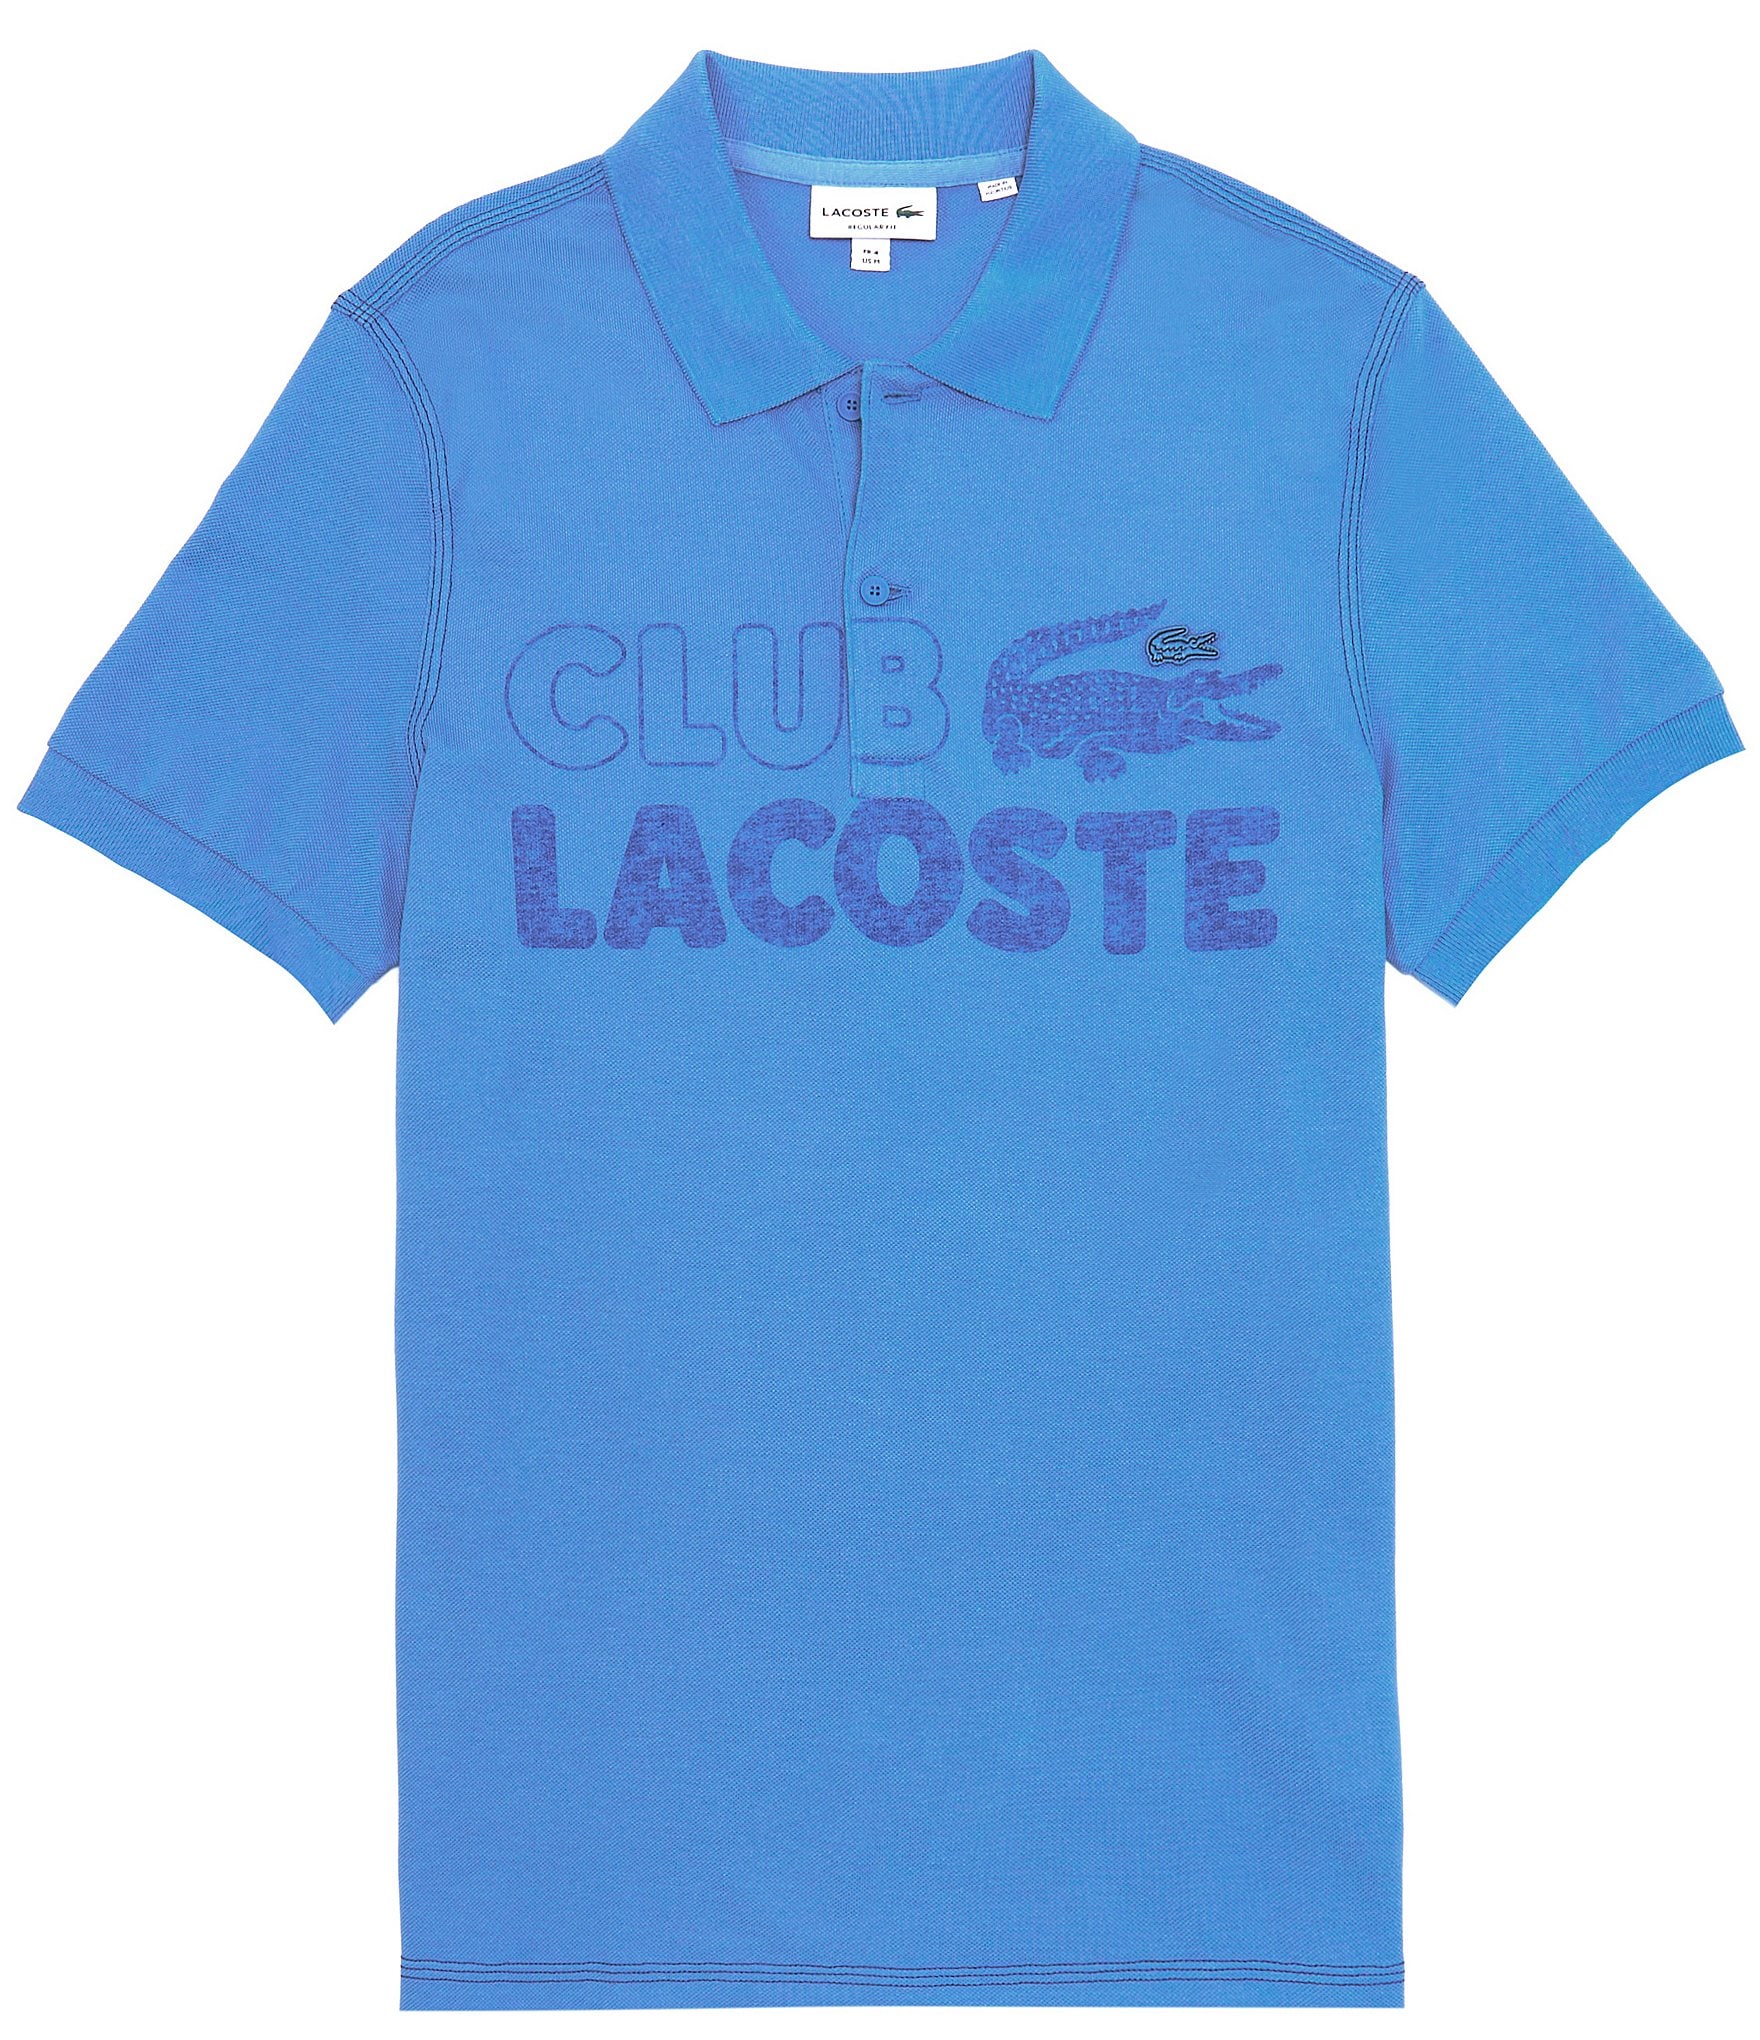 Lacoste Club Lacoste Short Shirt |